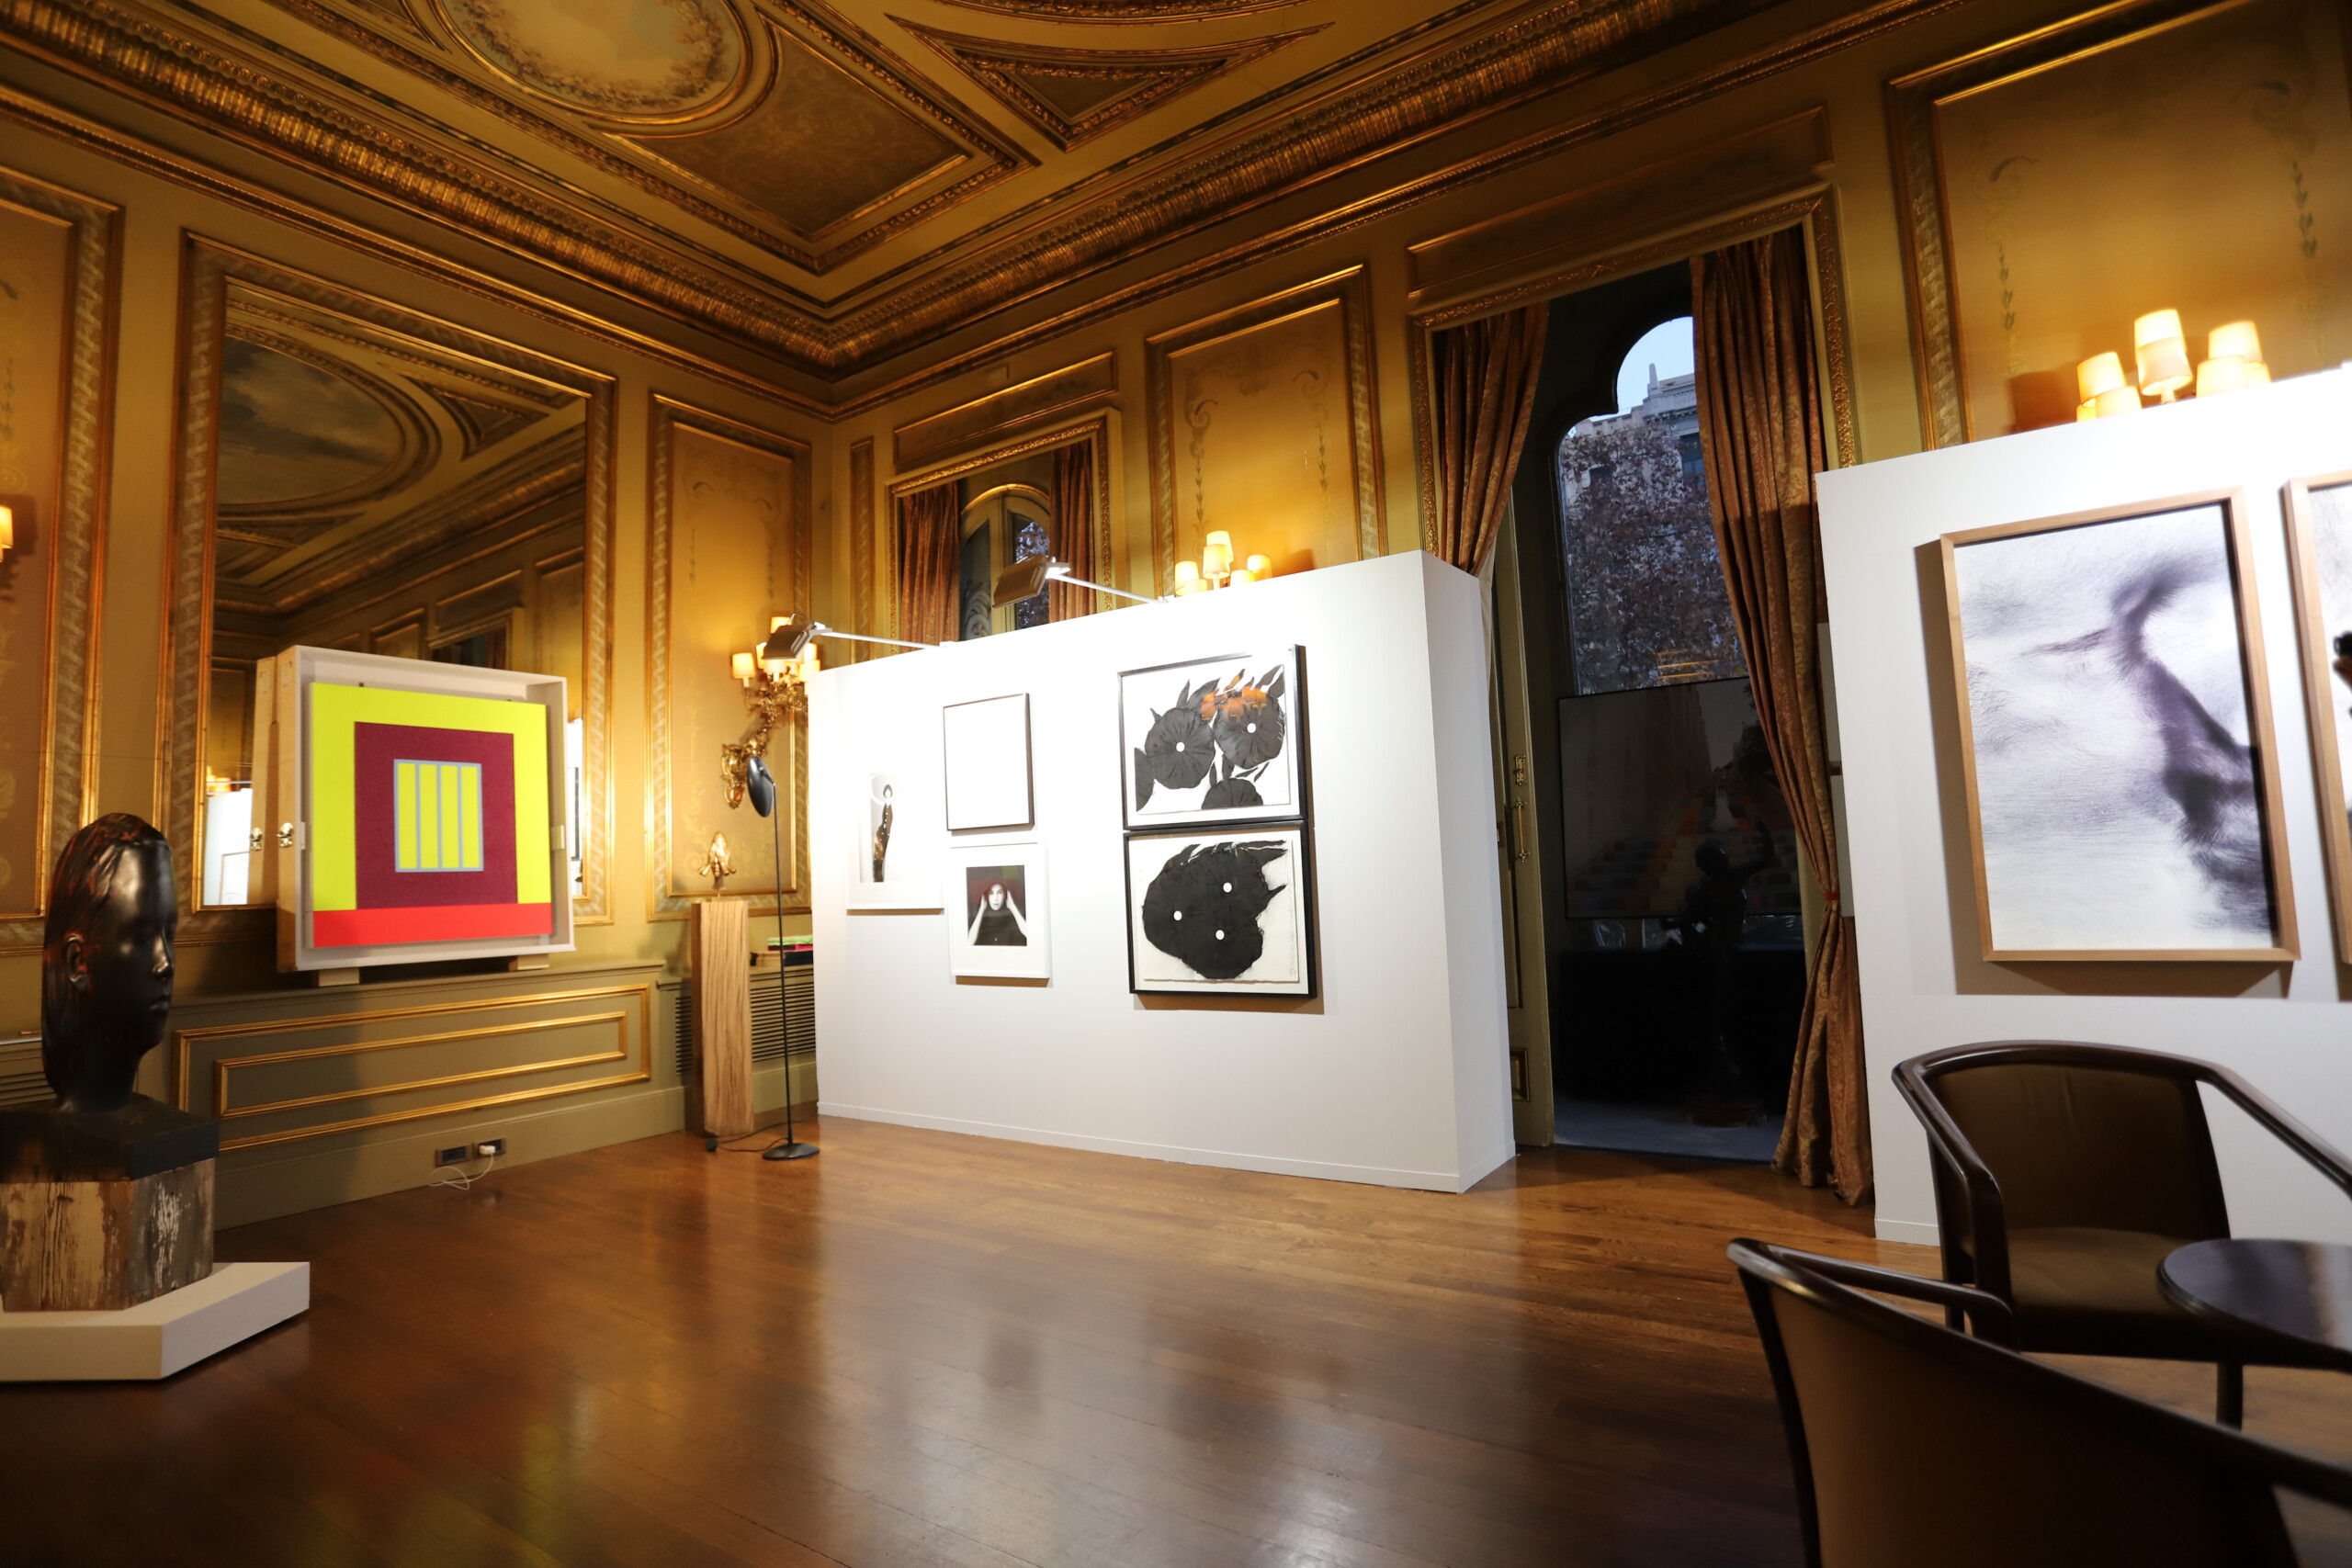 Imagen de un salón clásico con pinturas y esculturas expuestas